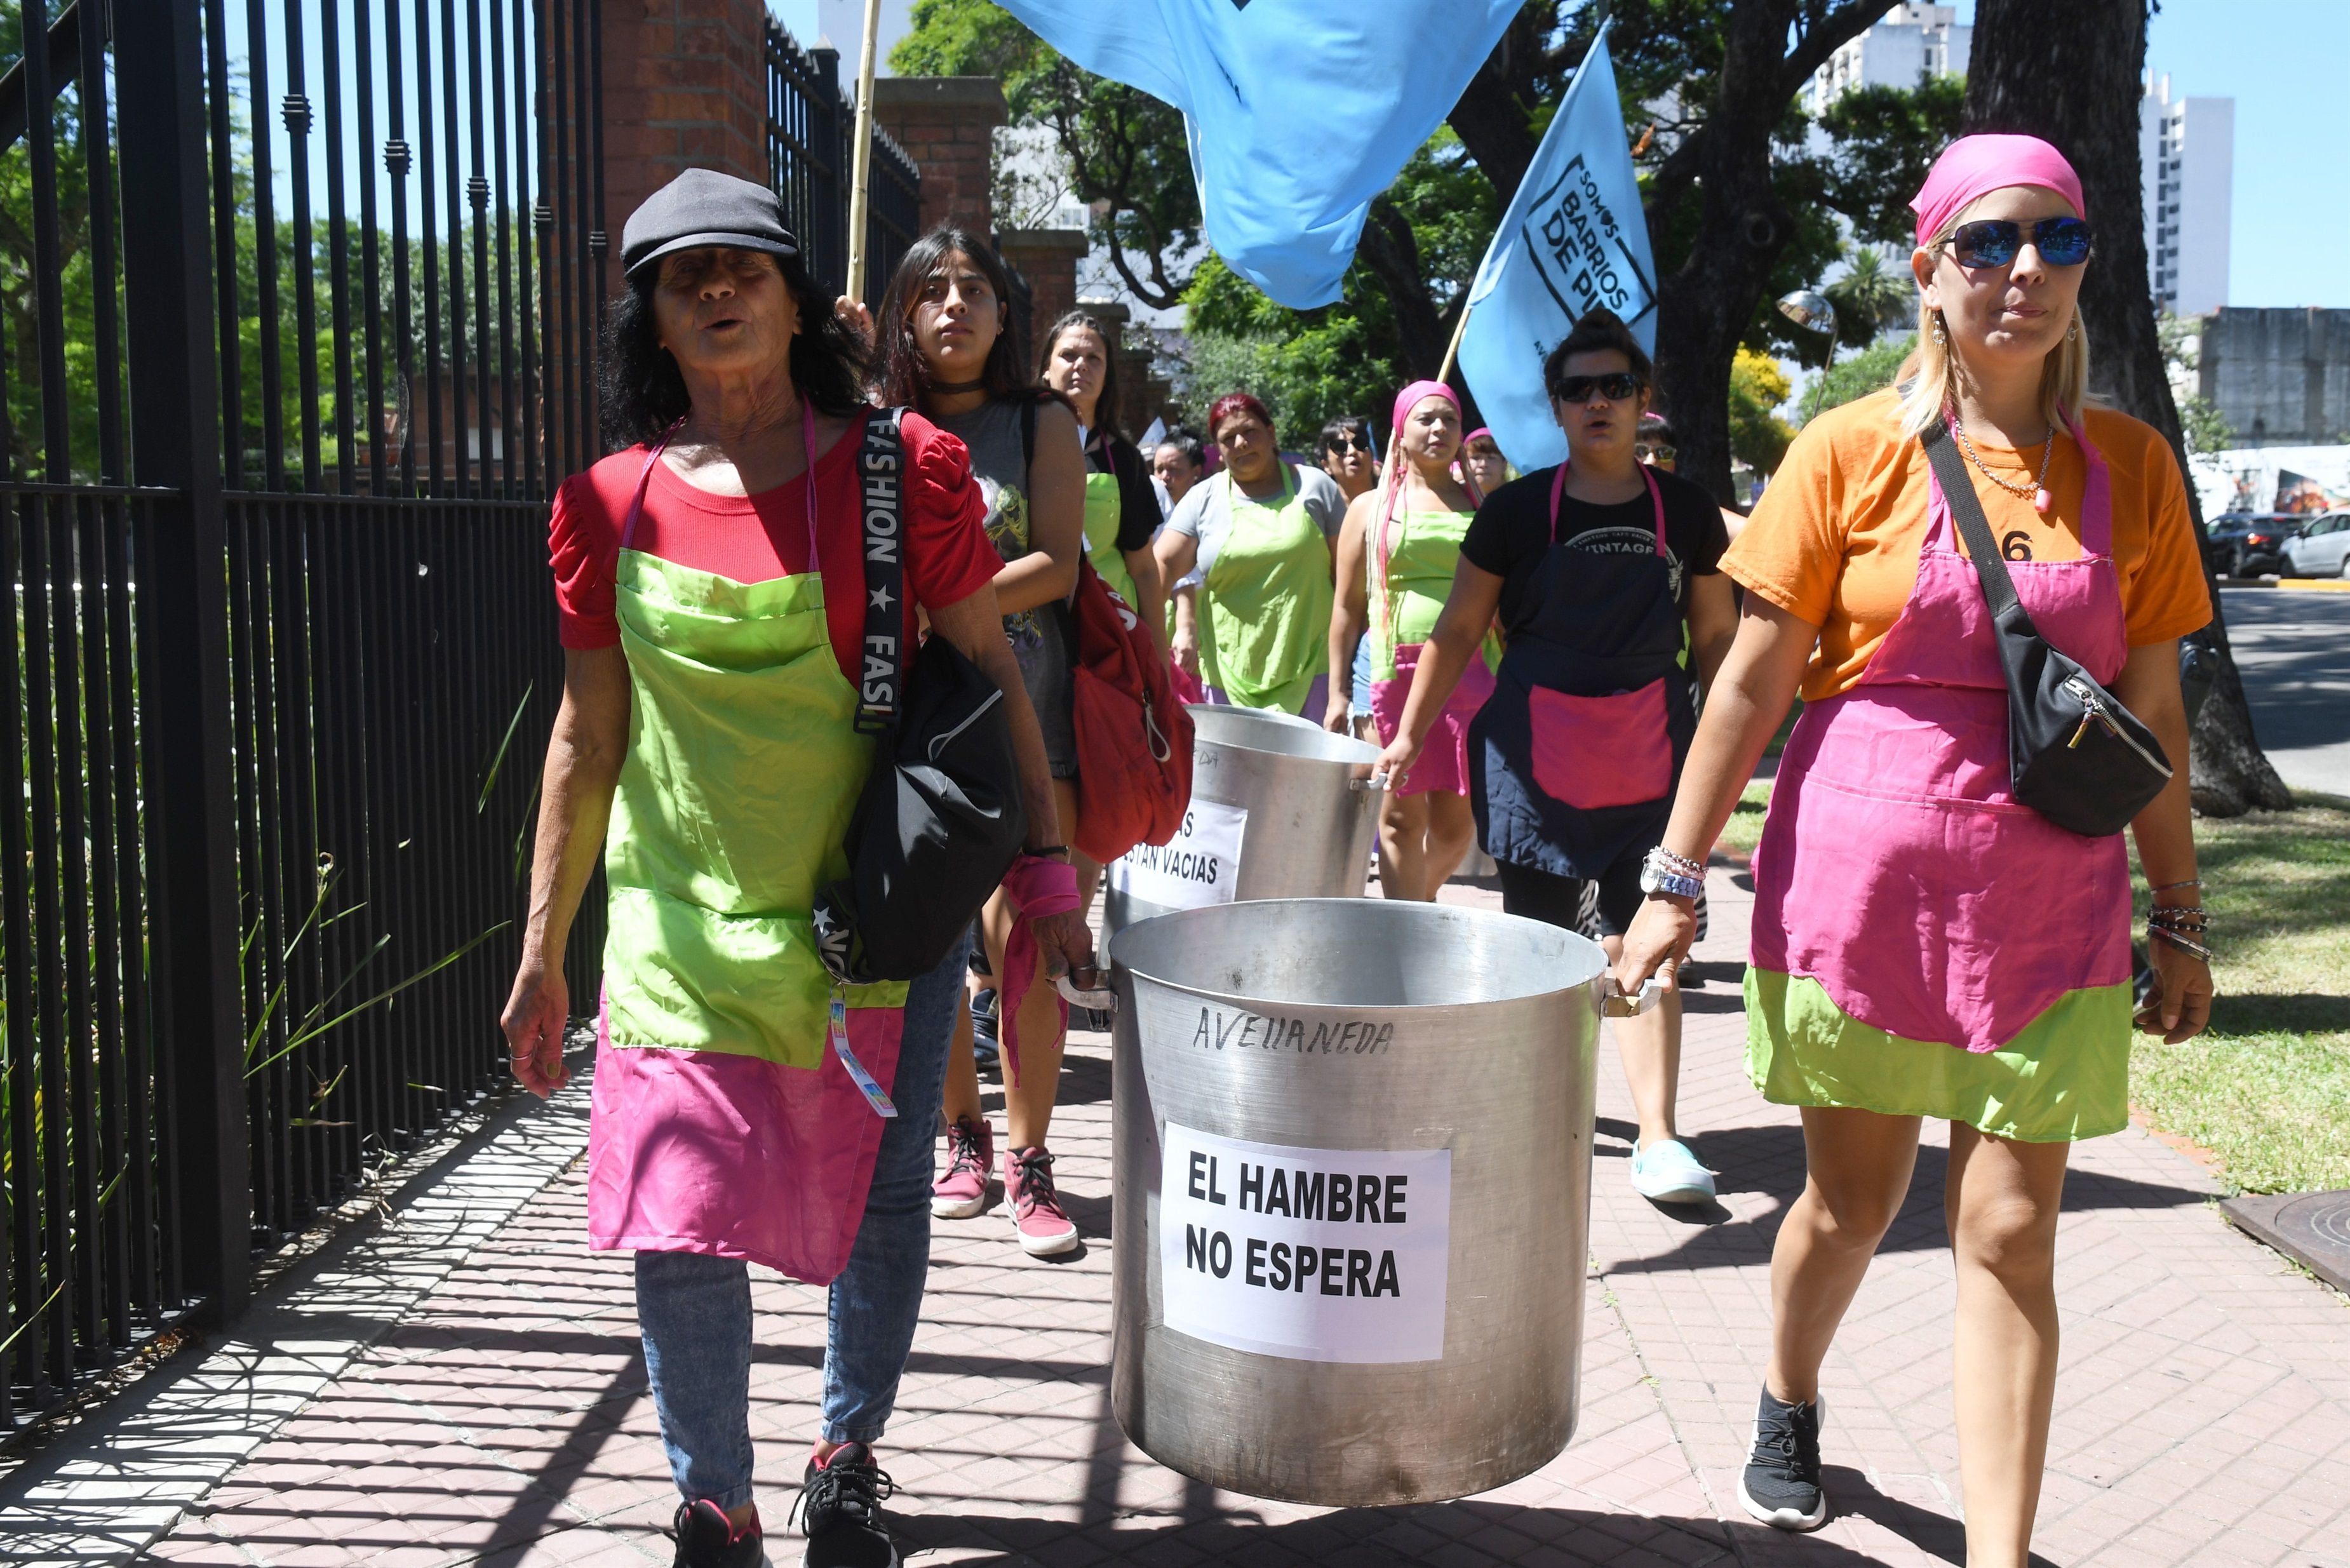 Los movimientos sociales, como Somos barrios de Pie, impulsan la protesta "ollas vacías" ante la falta de alimentos para los comedores
DABOVE DANIEL / TÉLAM 